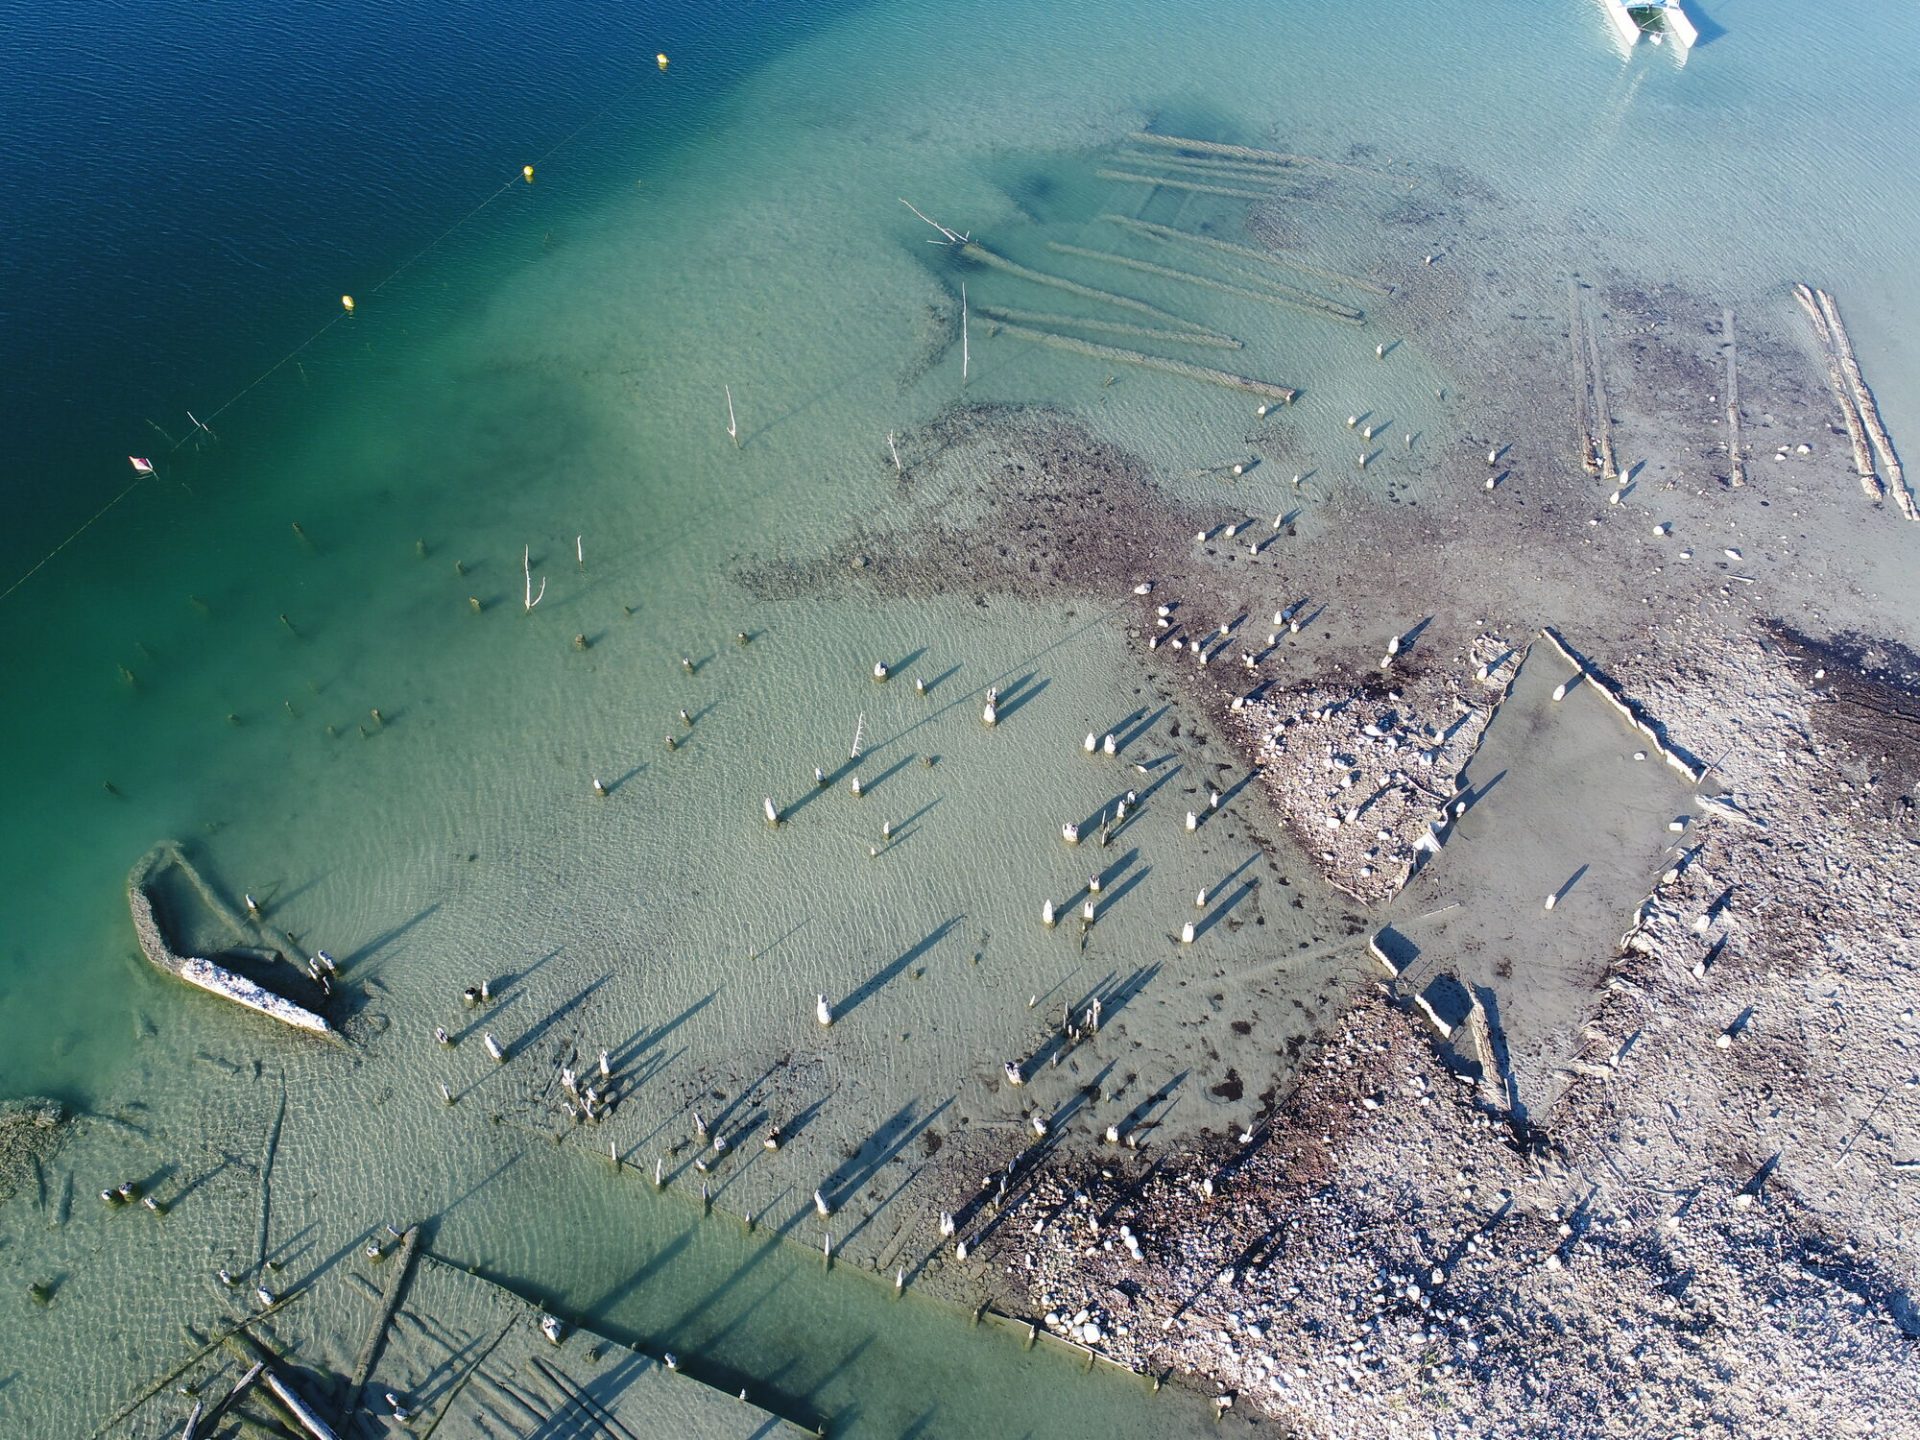 Lac de Paladru Charavines excavation site